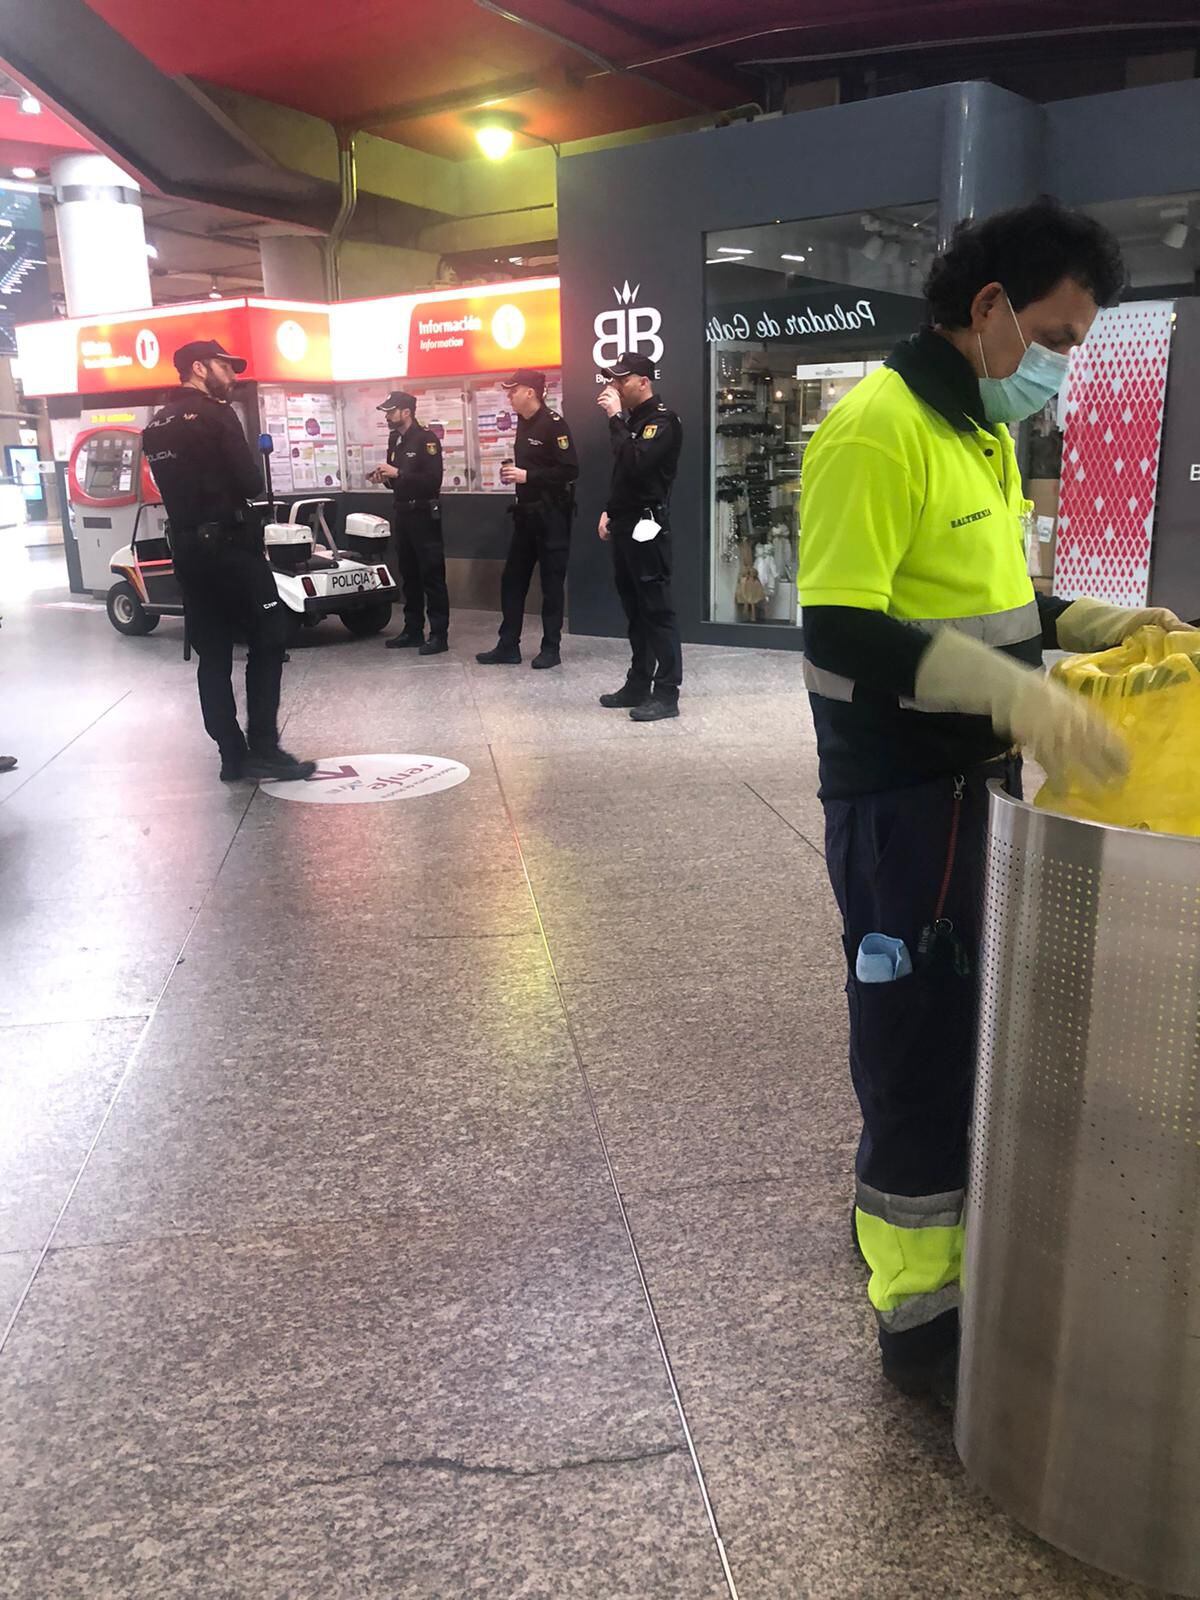 Policías sin mascarilla, en la estación de Cercanías de Atocha esta mañana. L. F.